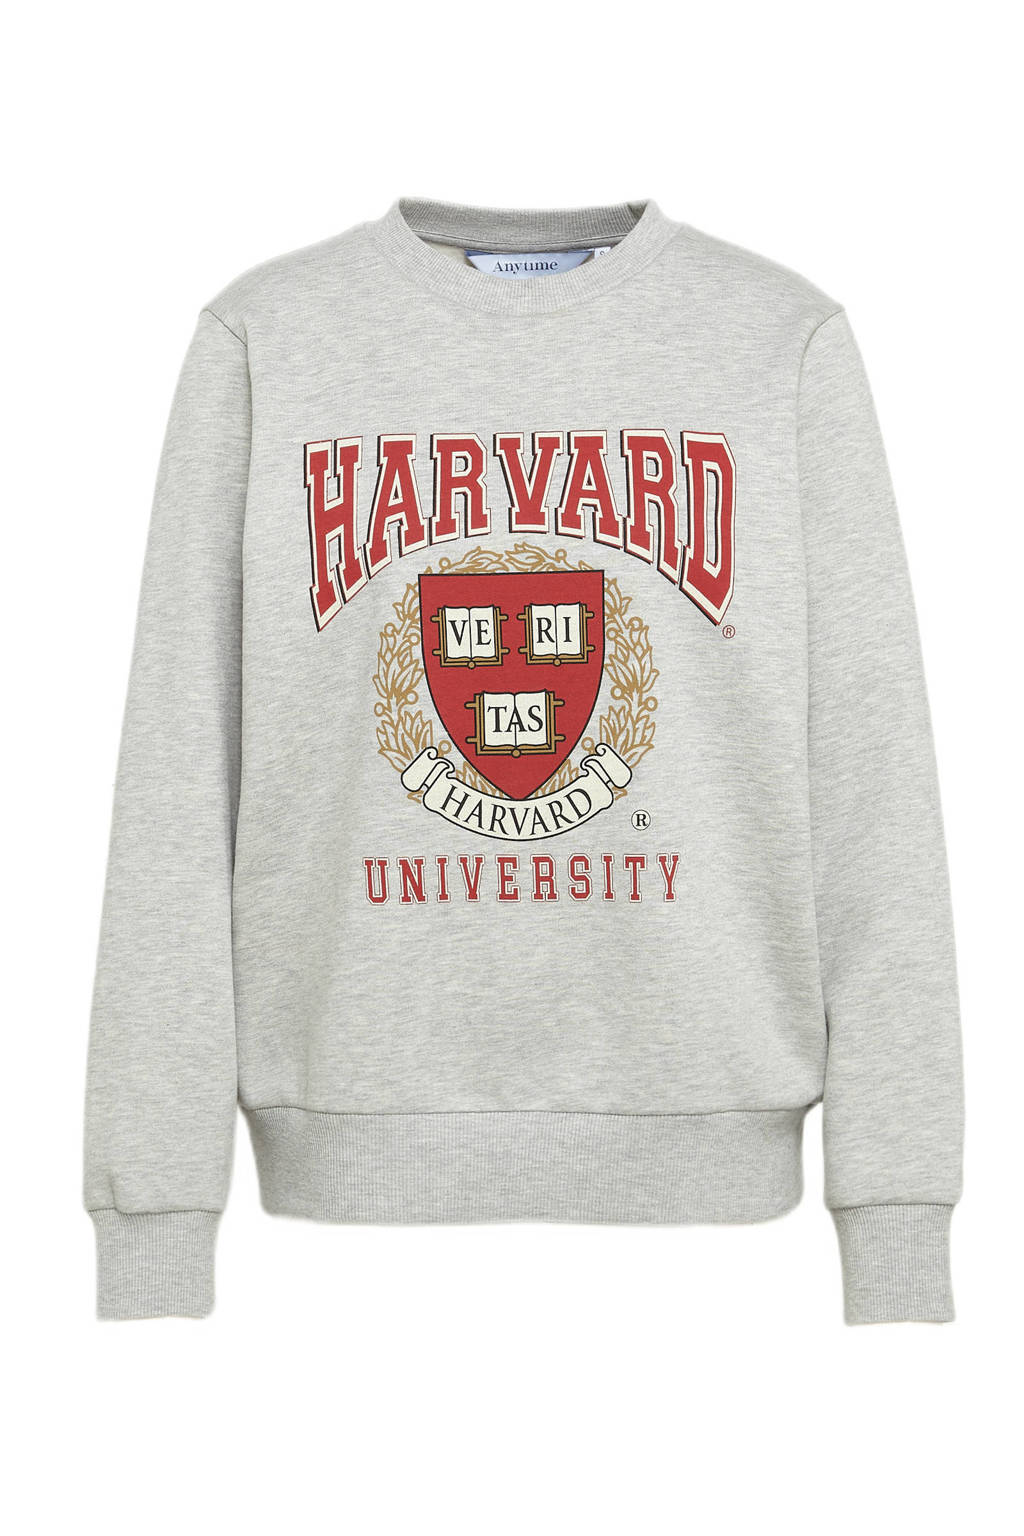 Verklaring scheuren dodelijk anytime Harvard sweater met printopdruk grijs/rood | wehkamp